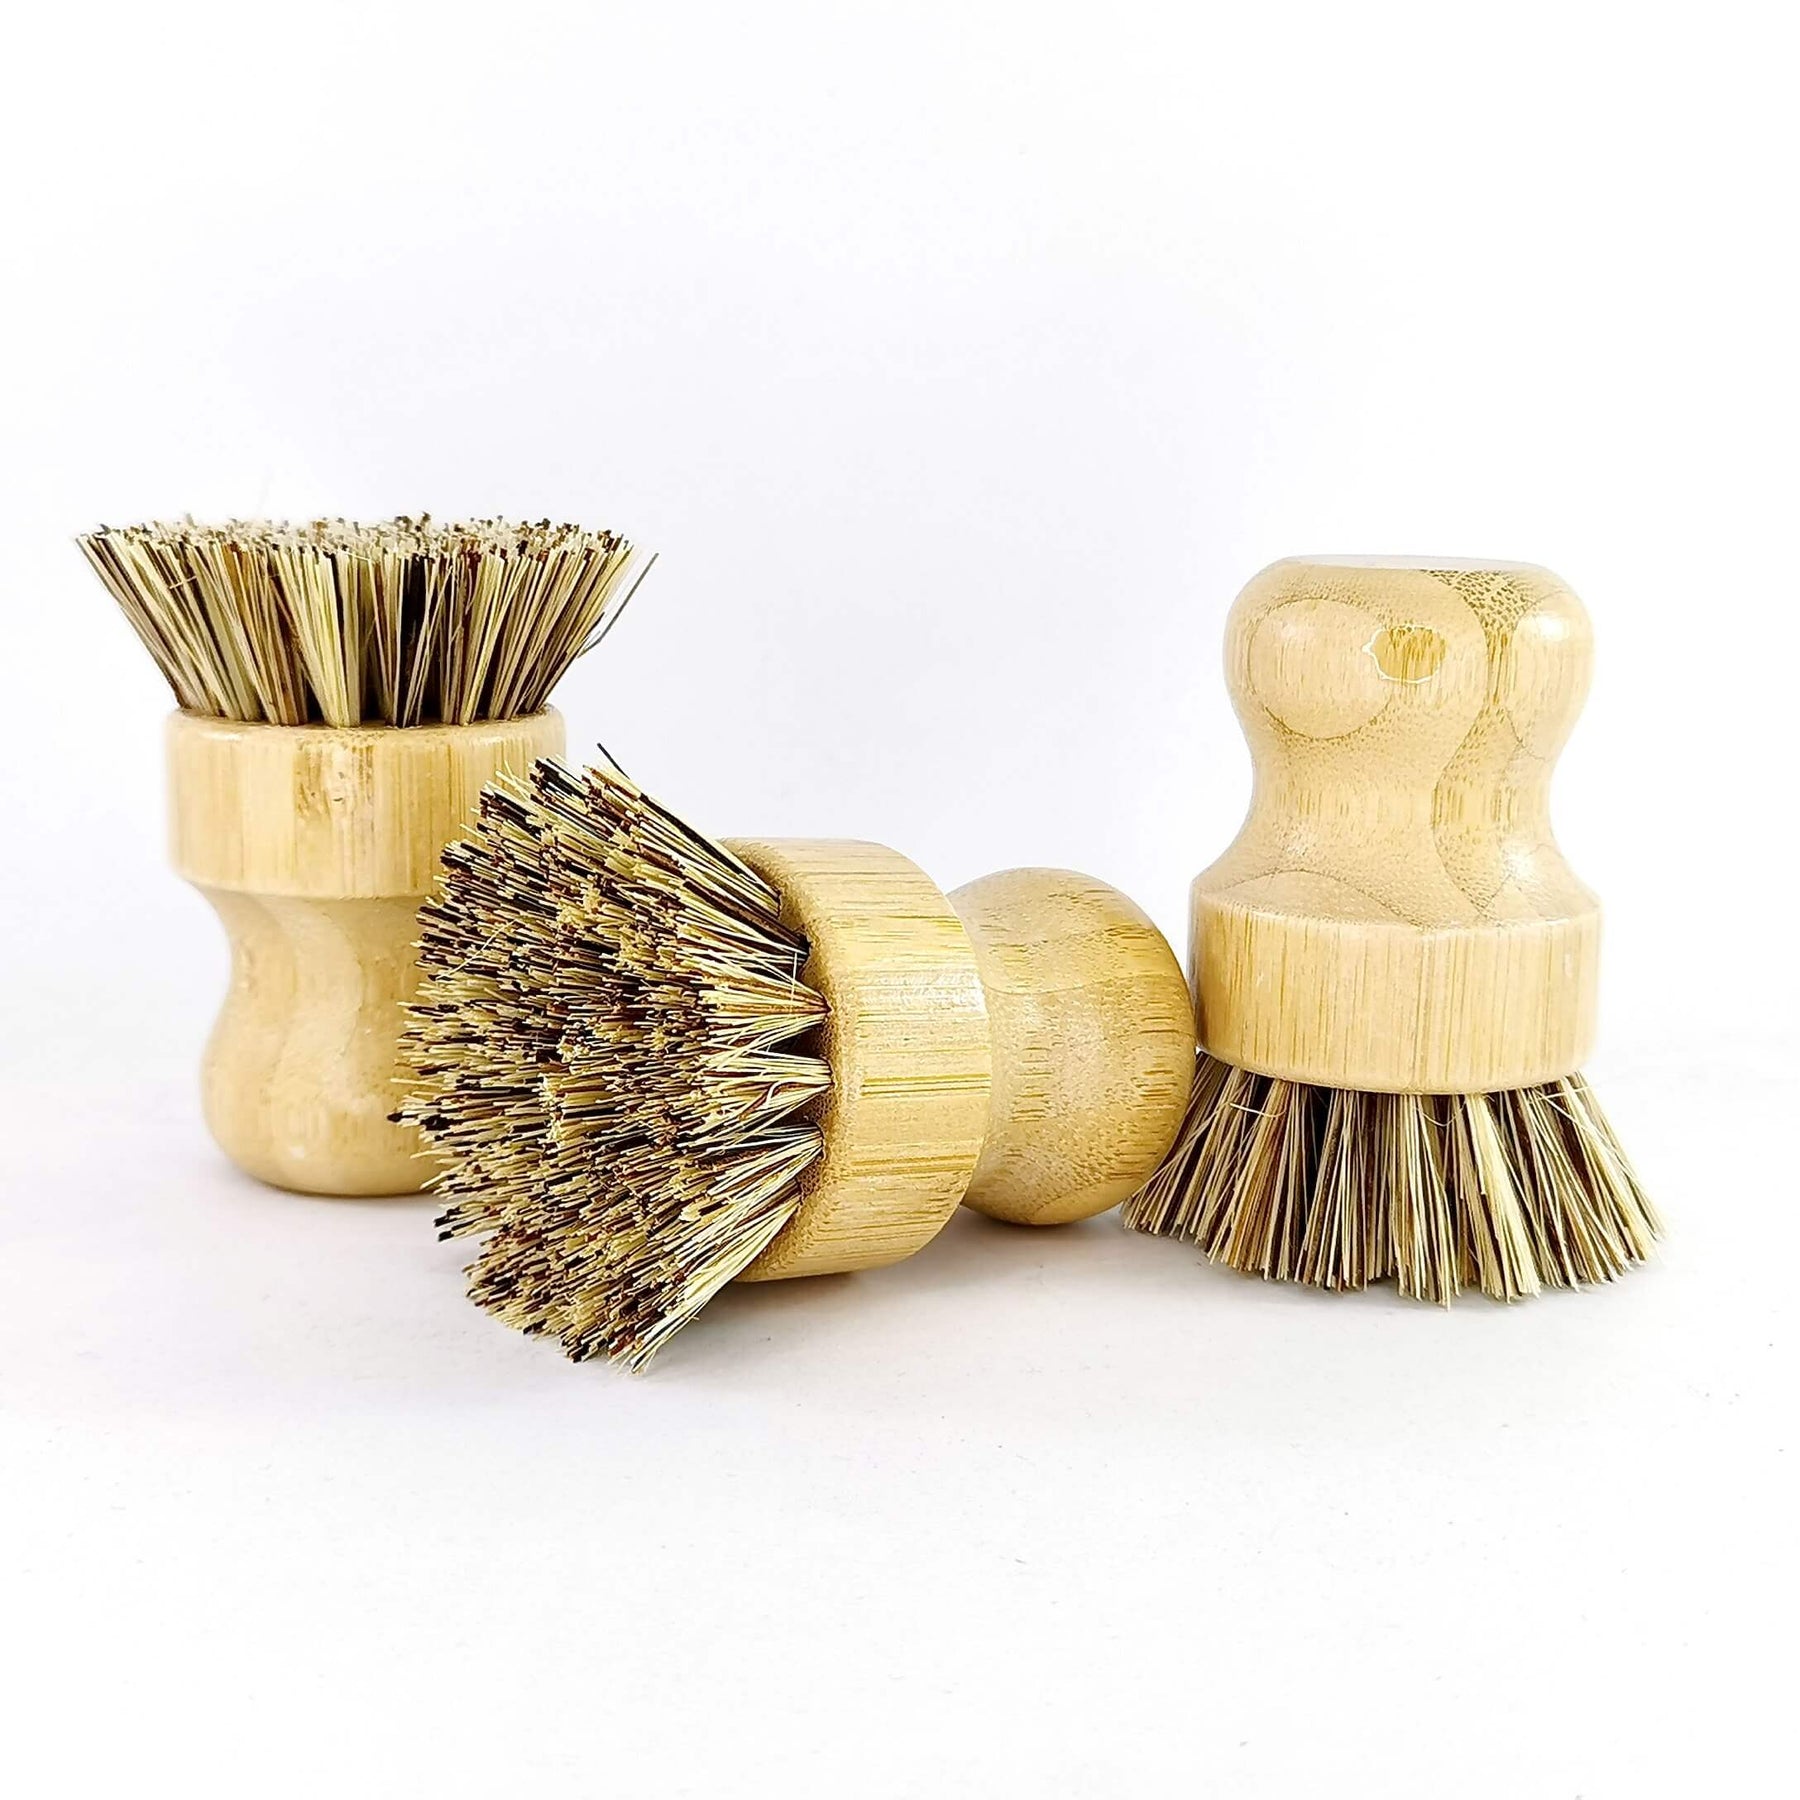 Cepillo de uñas, de madera y fibras vegetales